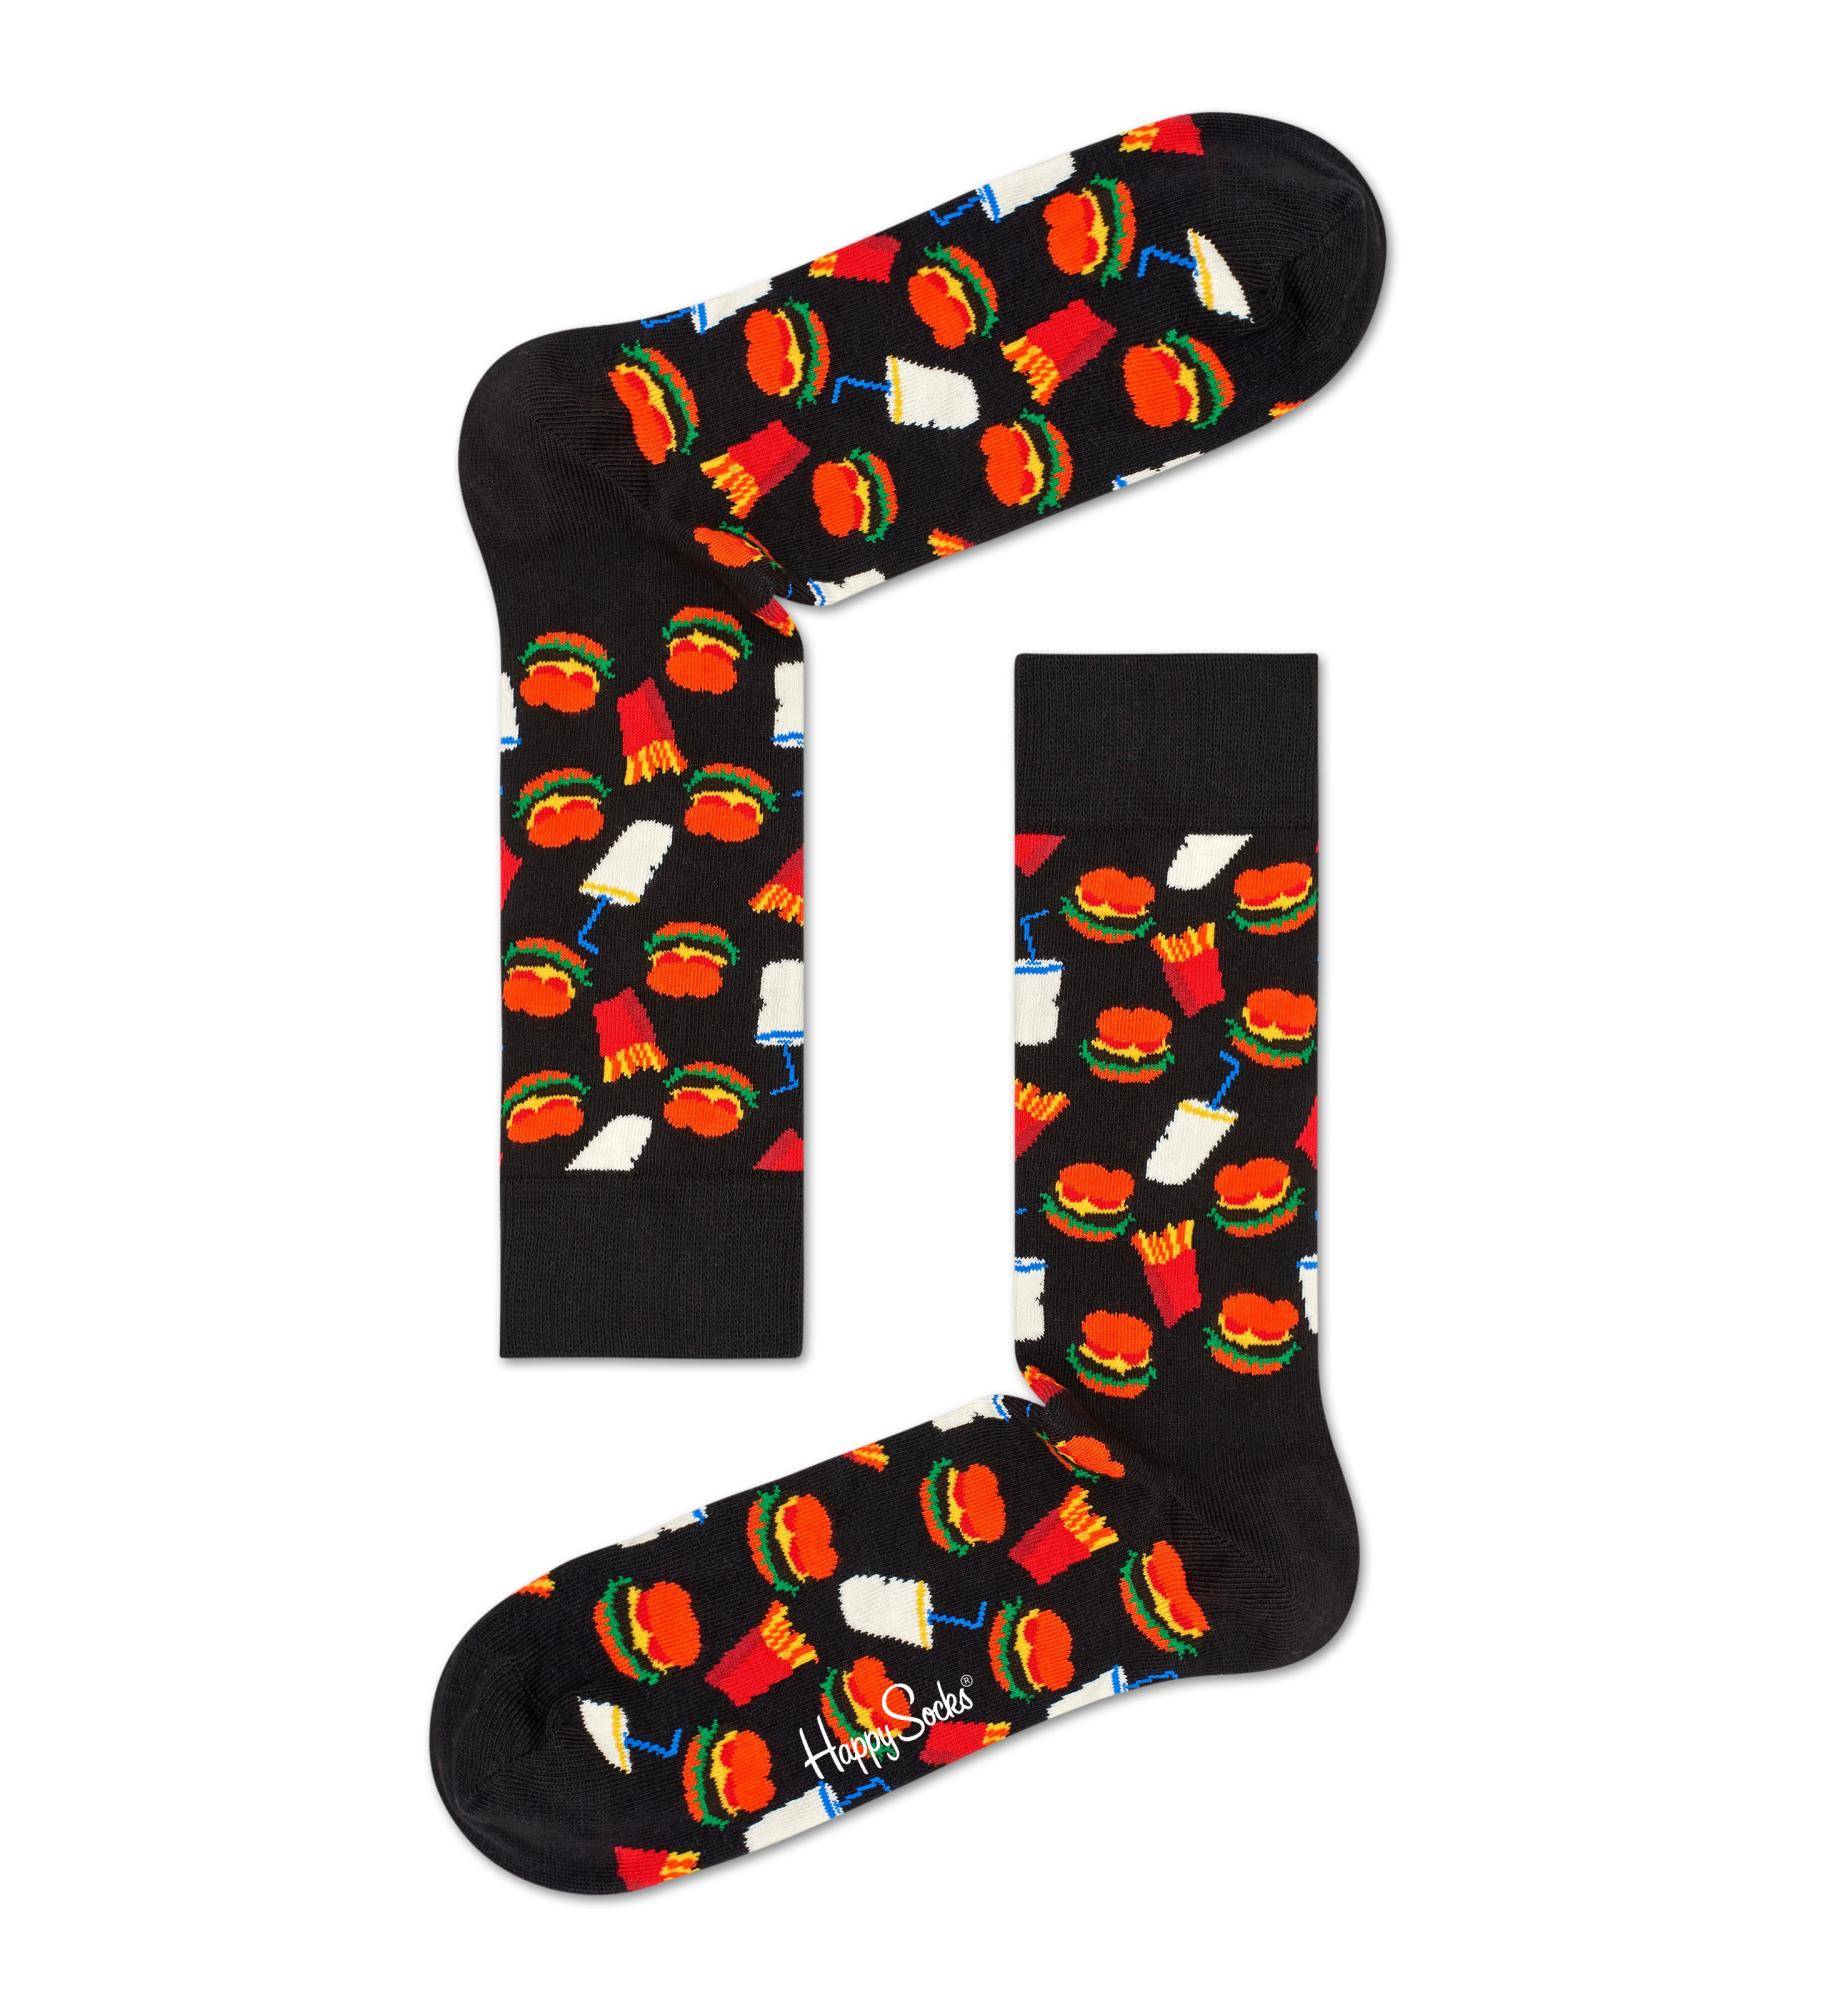 Носки Happy socks Hamburger Sock HAM01 9050, размер 29